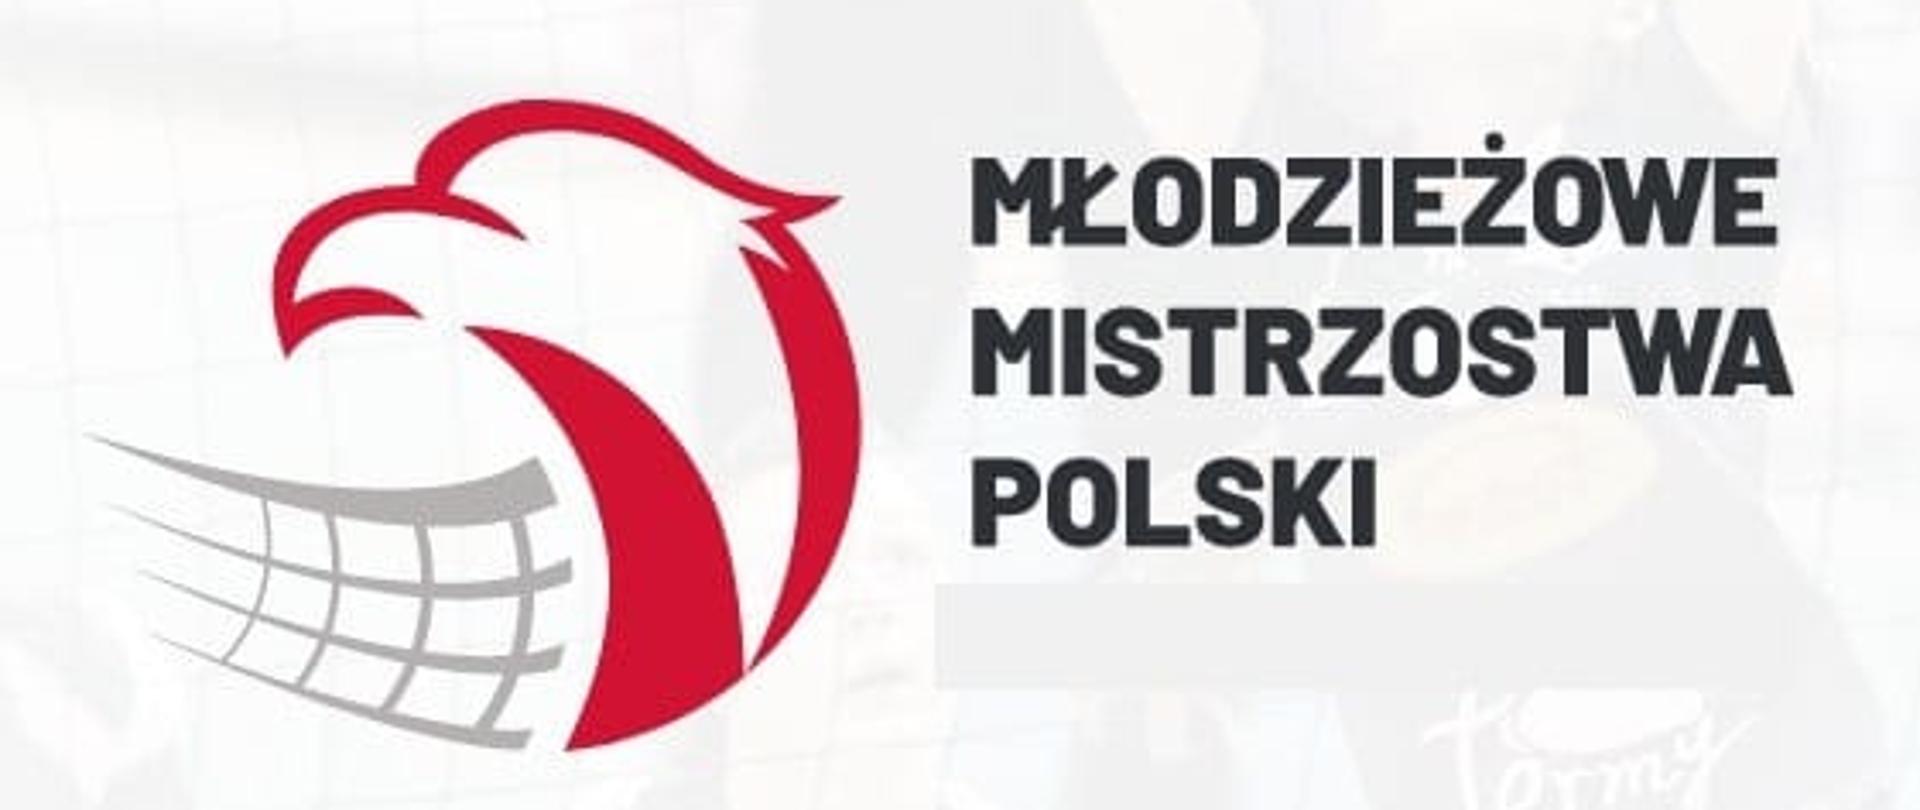 logo Młodzieżowe Mistrzostwa Polski Siatkówka 